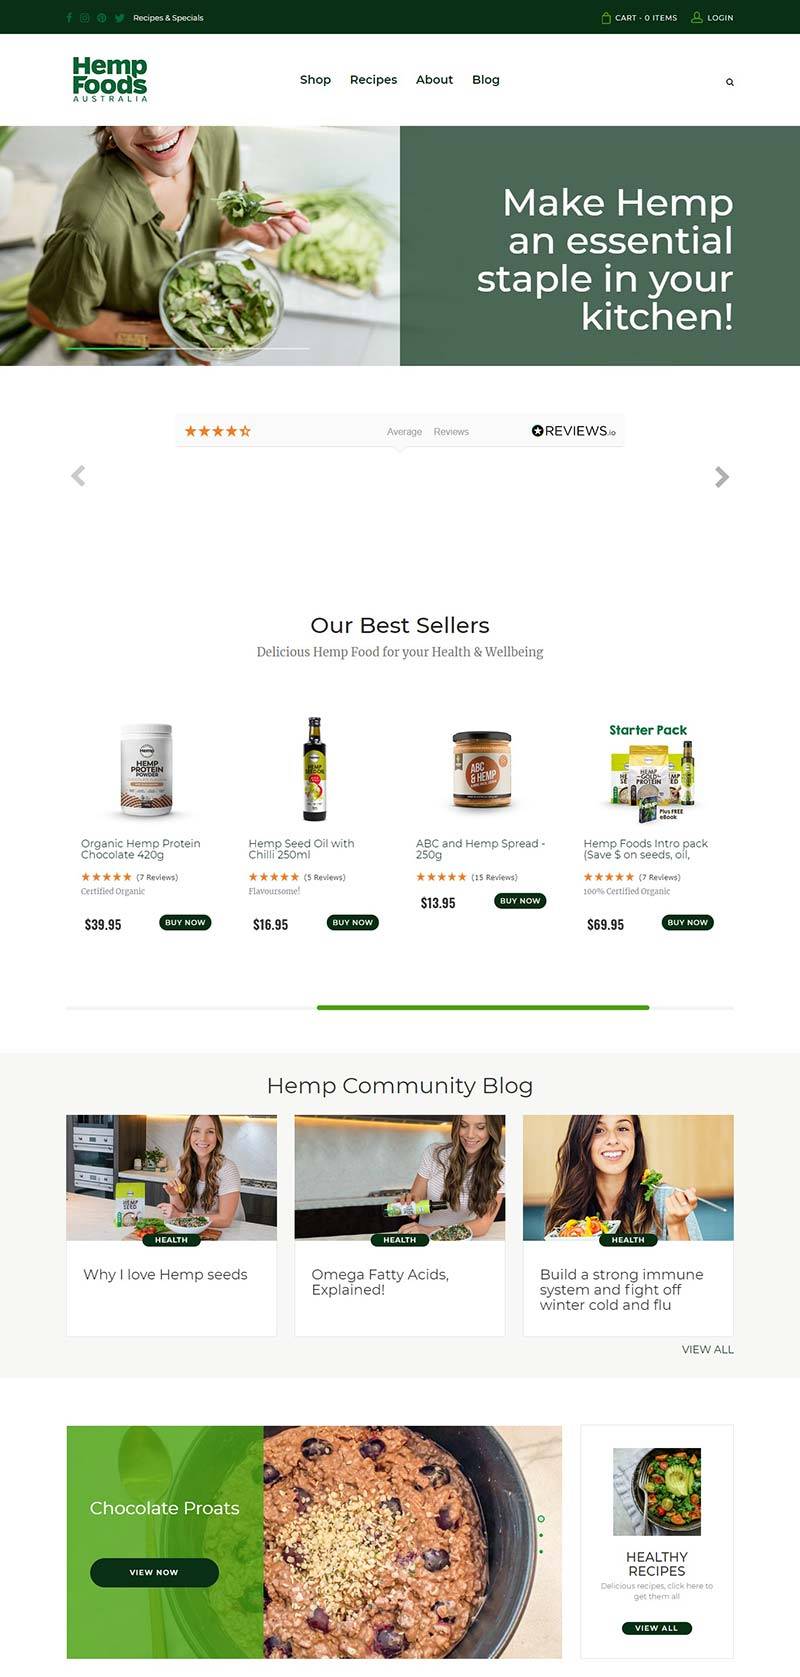 Hempfoods 澳大利亚营养保健品购物网站